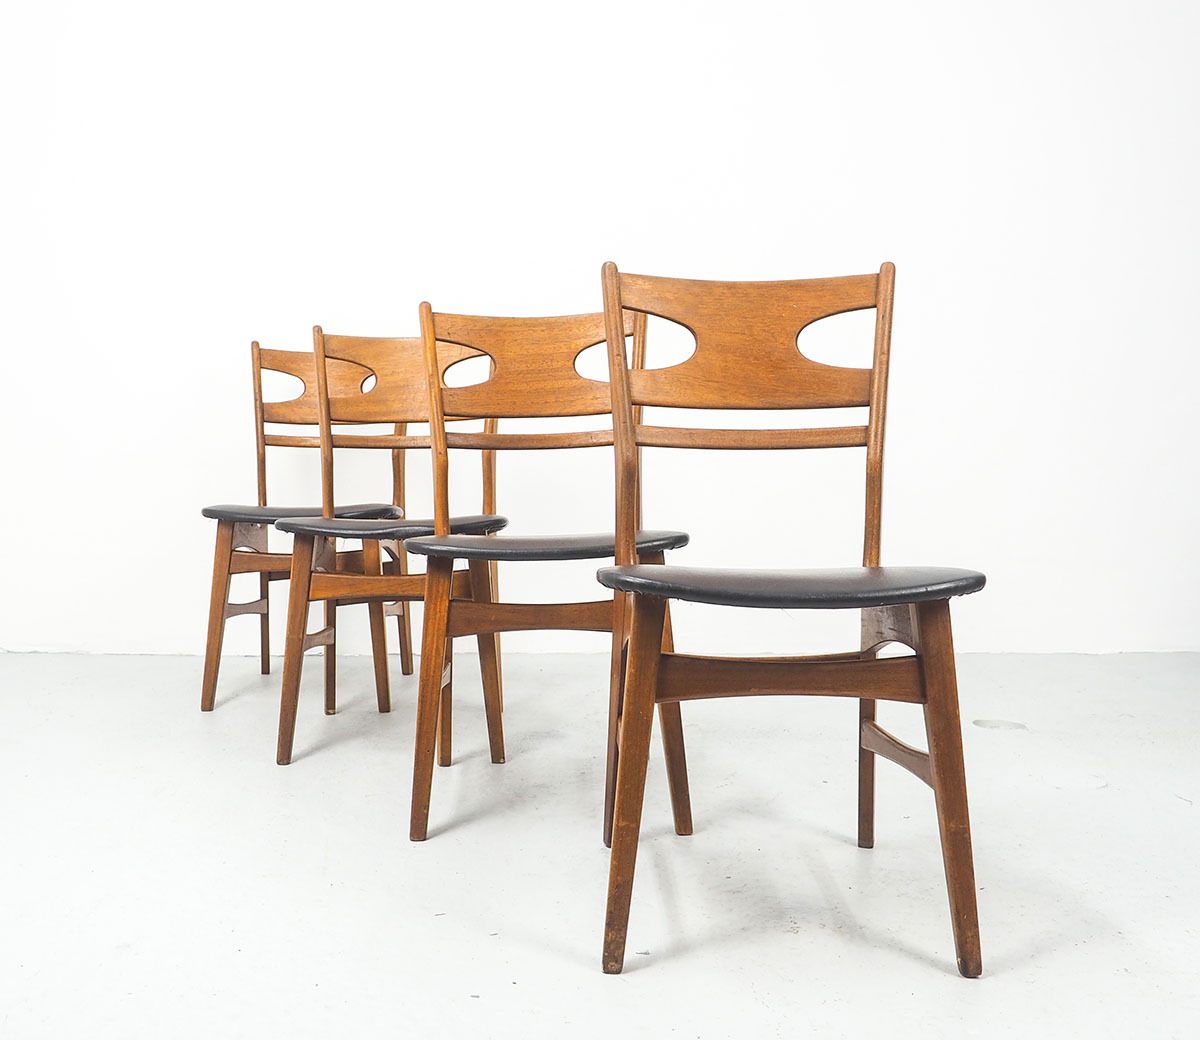 setteakskai2 Set Deens design stoelen teak skai, 1960'sDeens design, stoelen, teak, skai, 1960&#39;s, vintage, mid century design, eettafelstoelen,